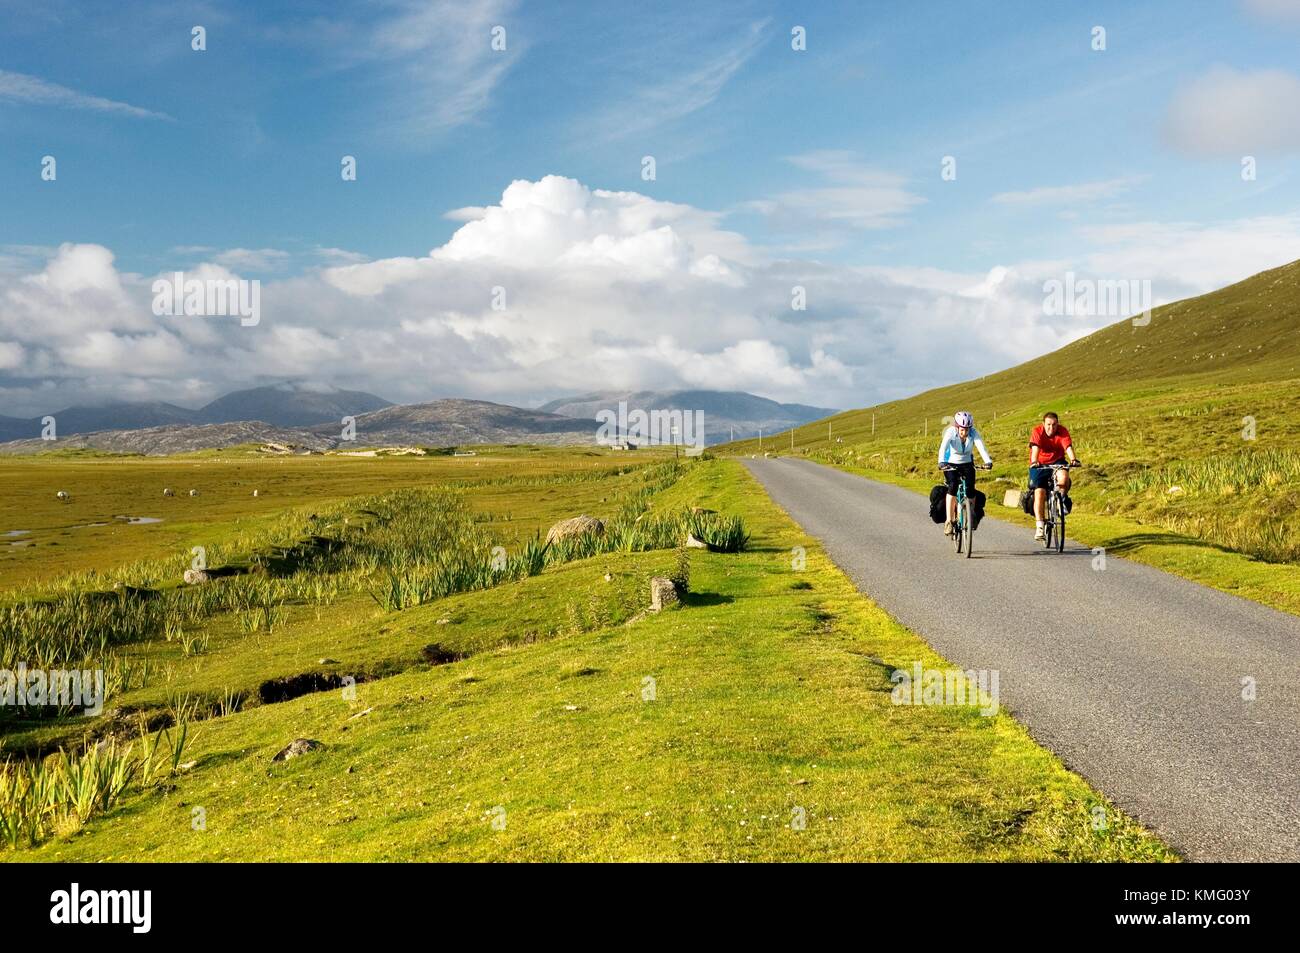 Les touristes à vélo sur la route principale de l'île de Leverburgh à Tarbert près de Scarastavore, Isle of Harris, Hébrides extérieures, en Écosse Banque D'Images